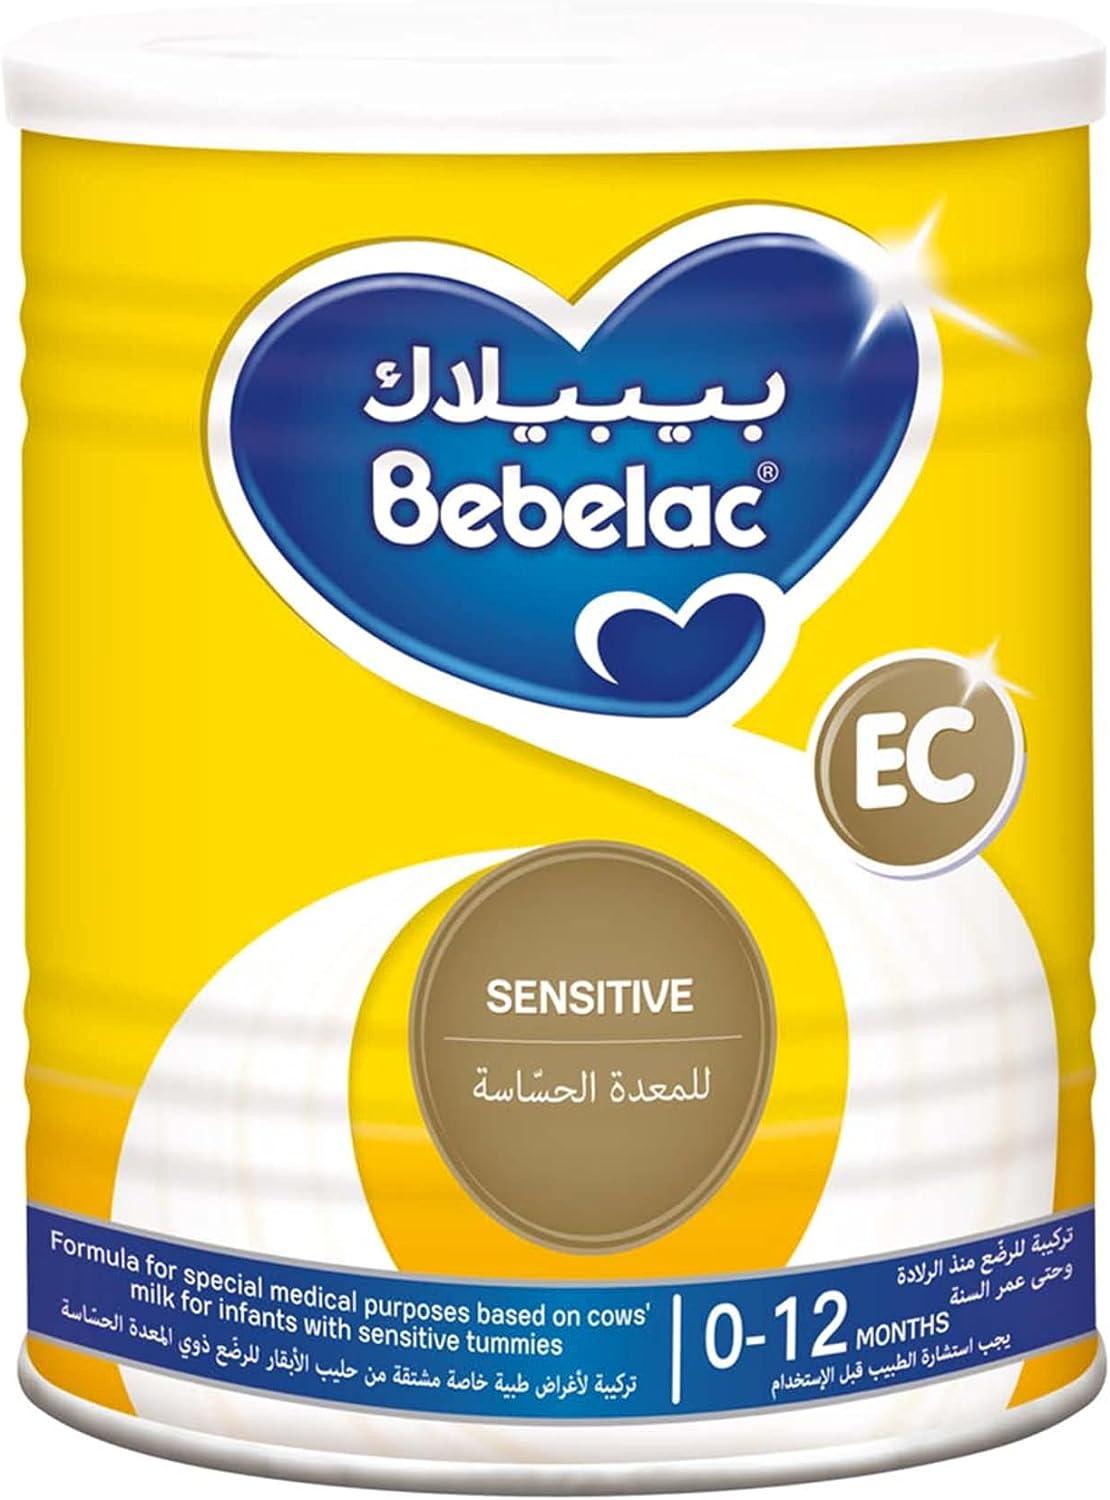 Bebelac EC (Extra Care) Milk 400g - Wellness Shoppee